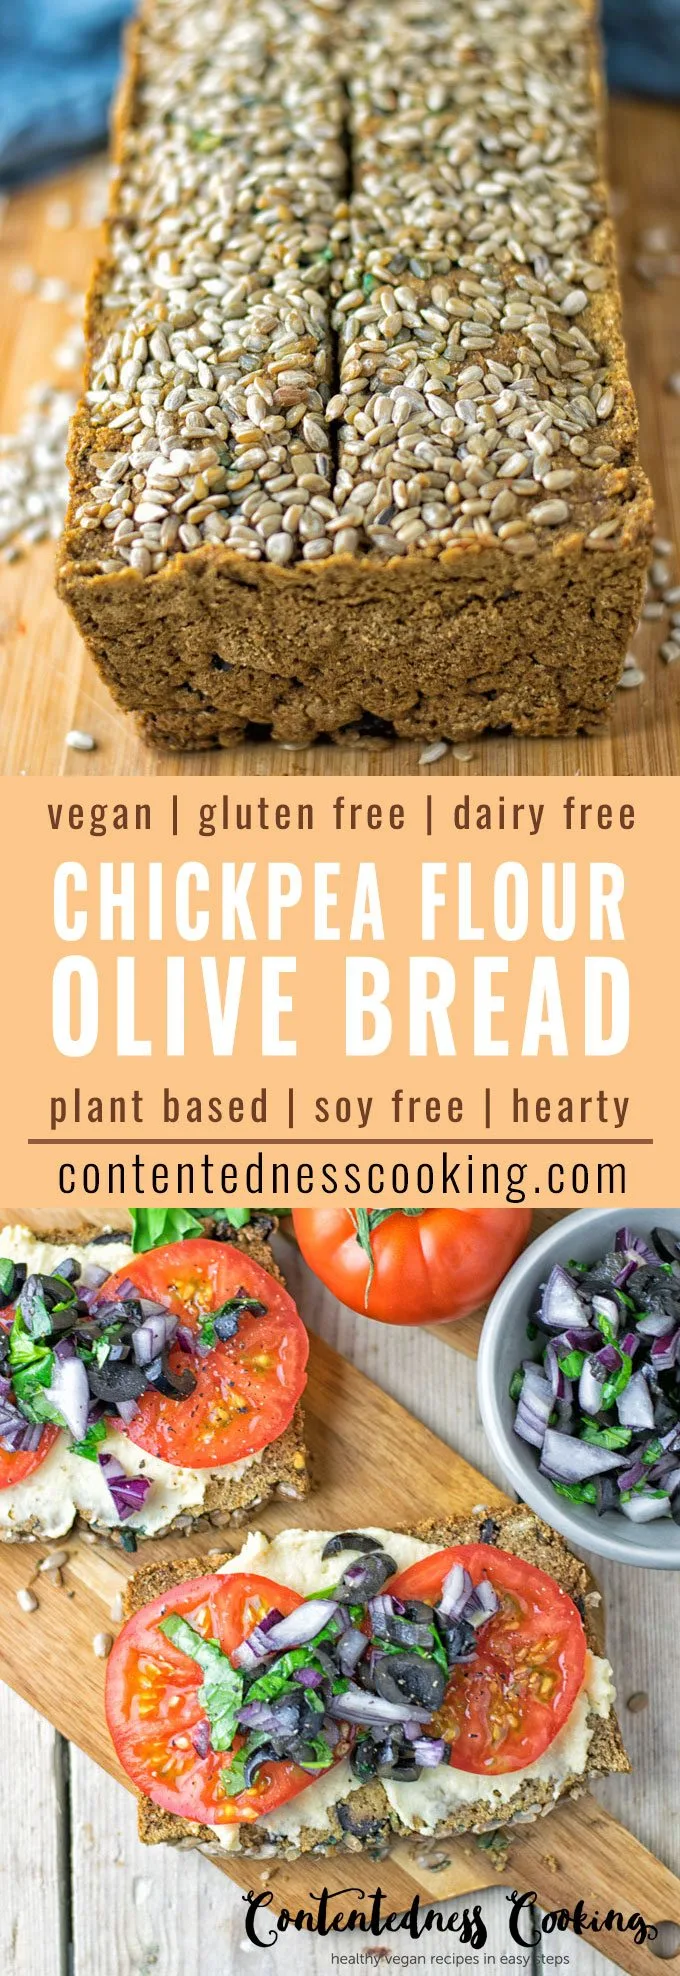 Olive Chickpea Flour Bread | #vegan #glutenfree #contentednesscooking #plantbased #soyfree #dairyfree